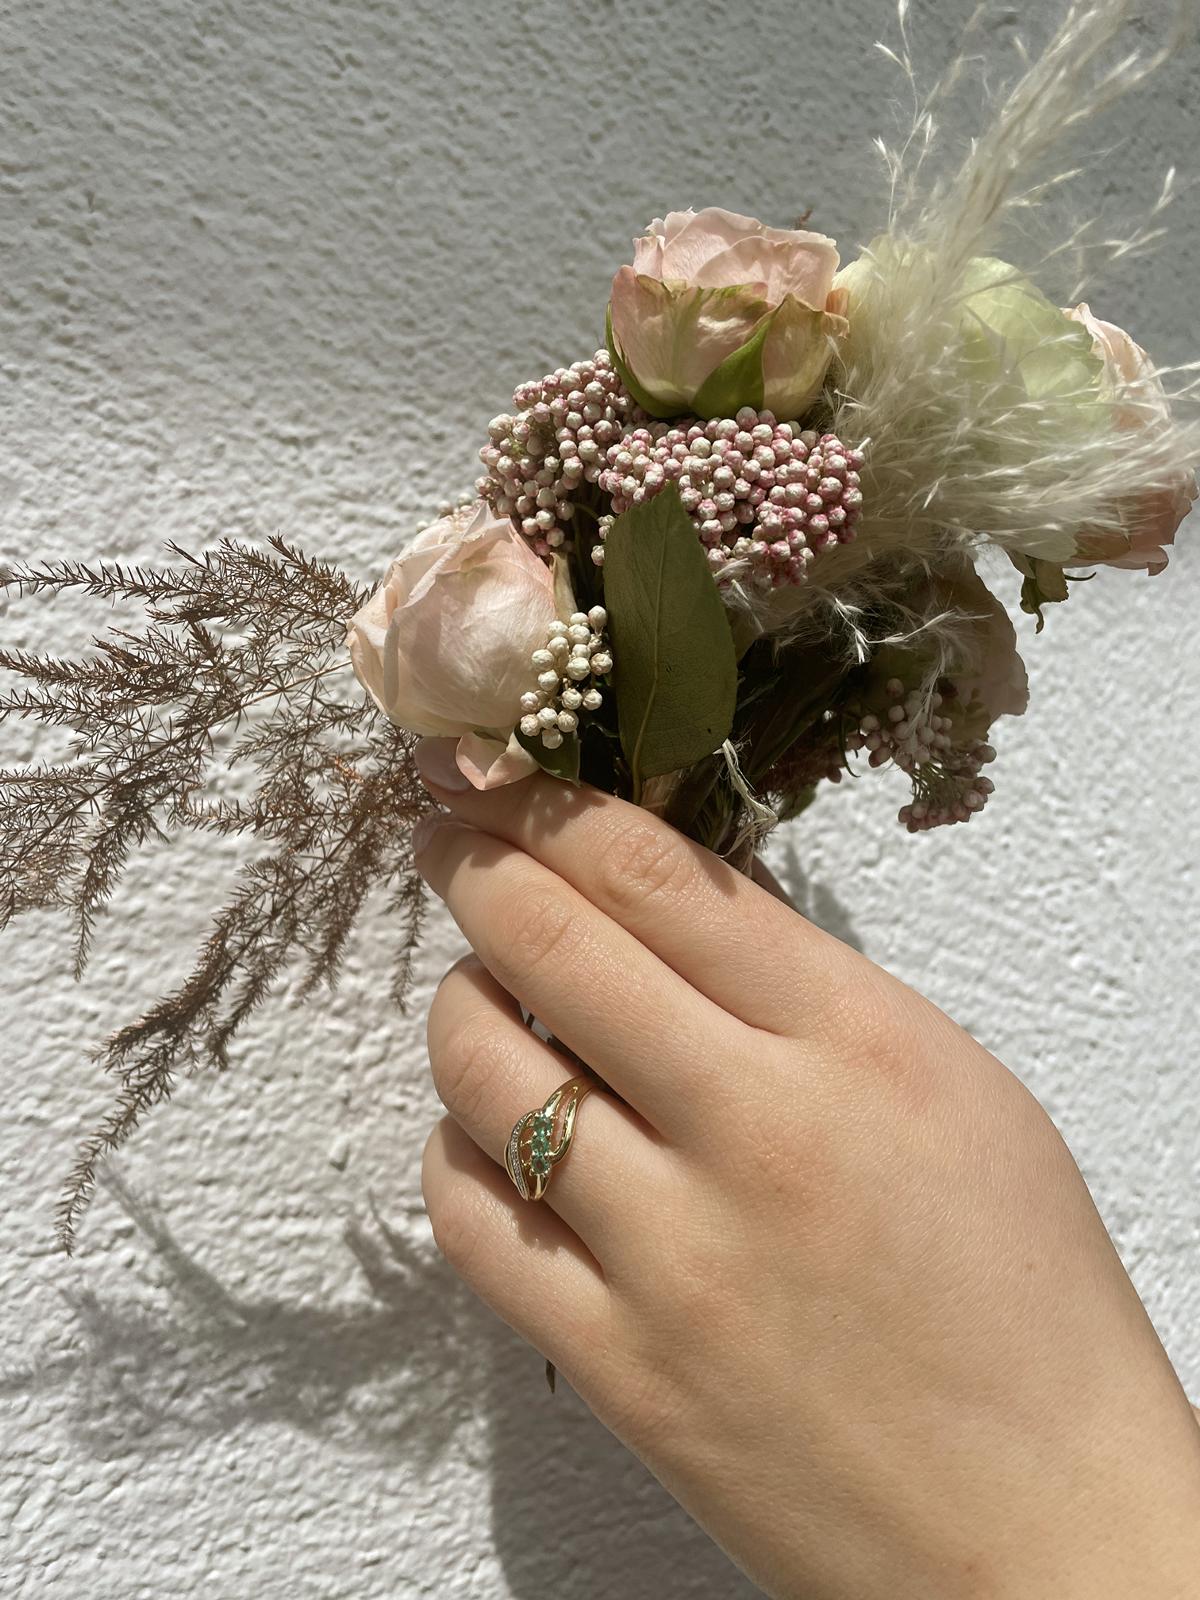 Damenring aus echtem Gelbgold mit Diamanten und Smaragd Edelsteinen an Damenhand - Our Lady | Skintype